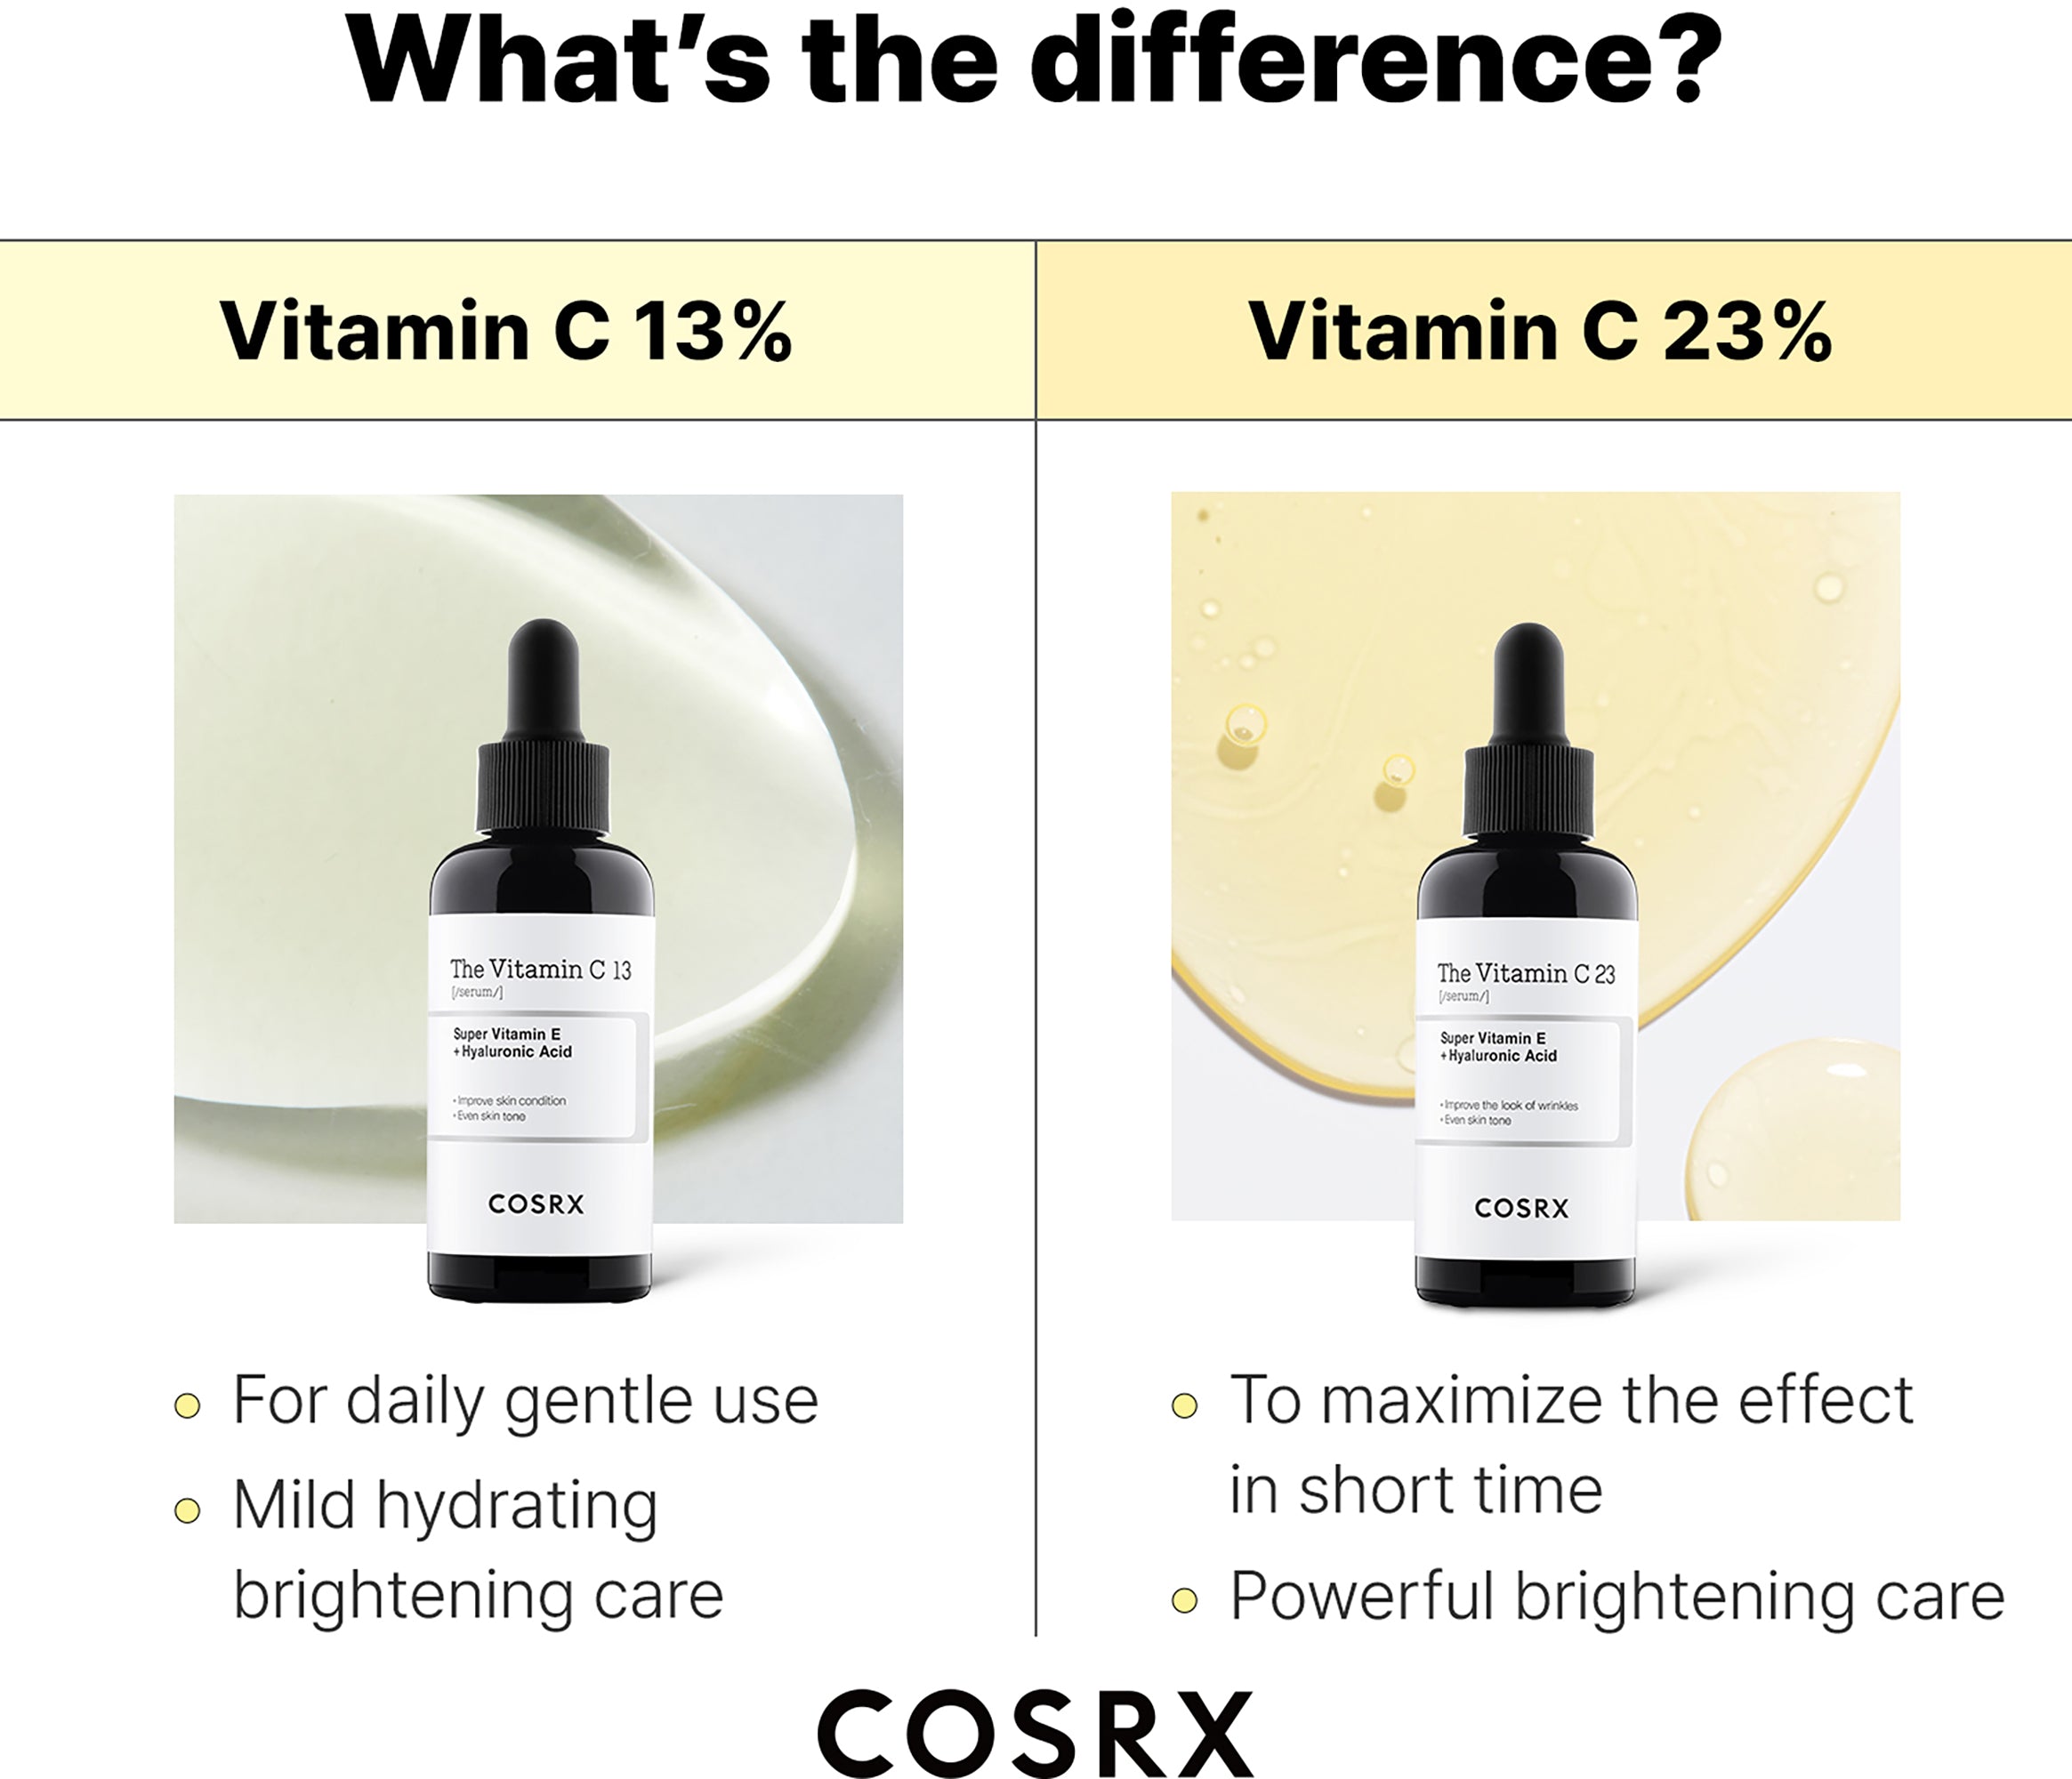 COSRX The Vitamin C 23 Serum 